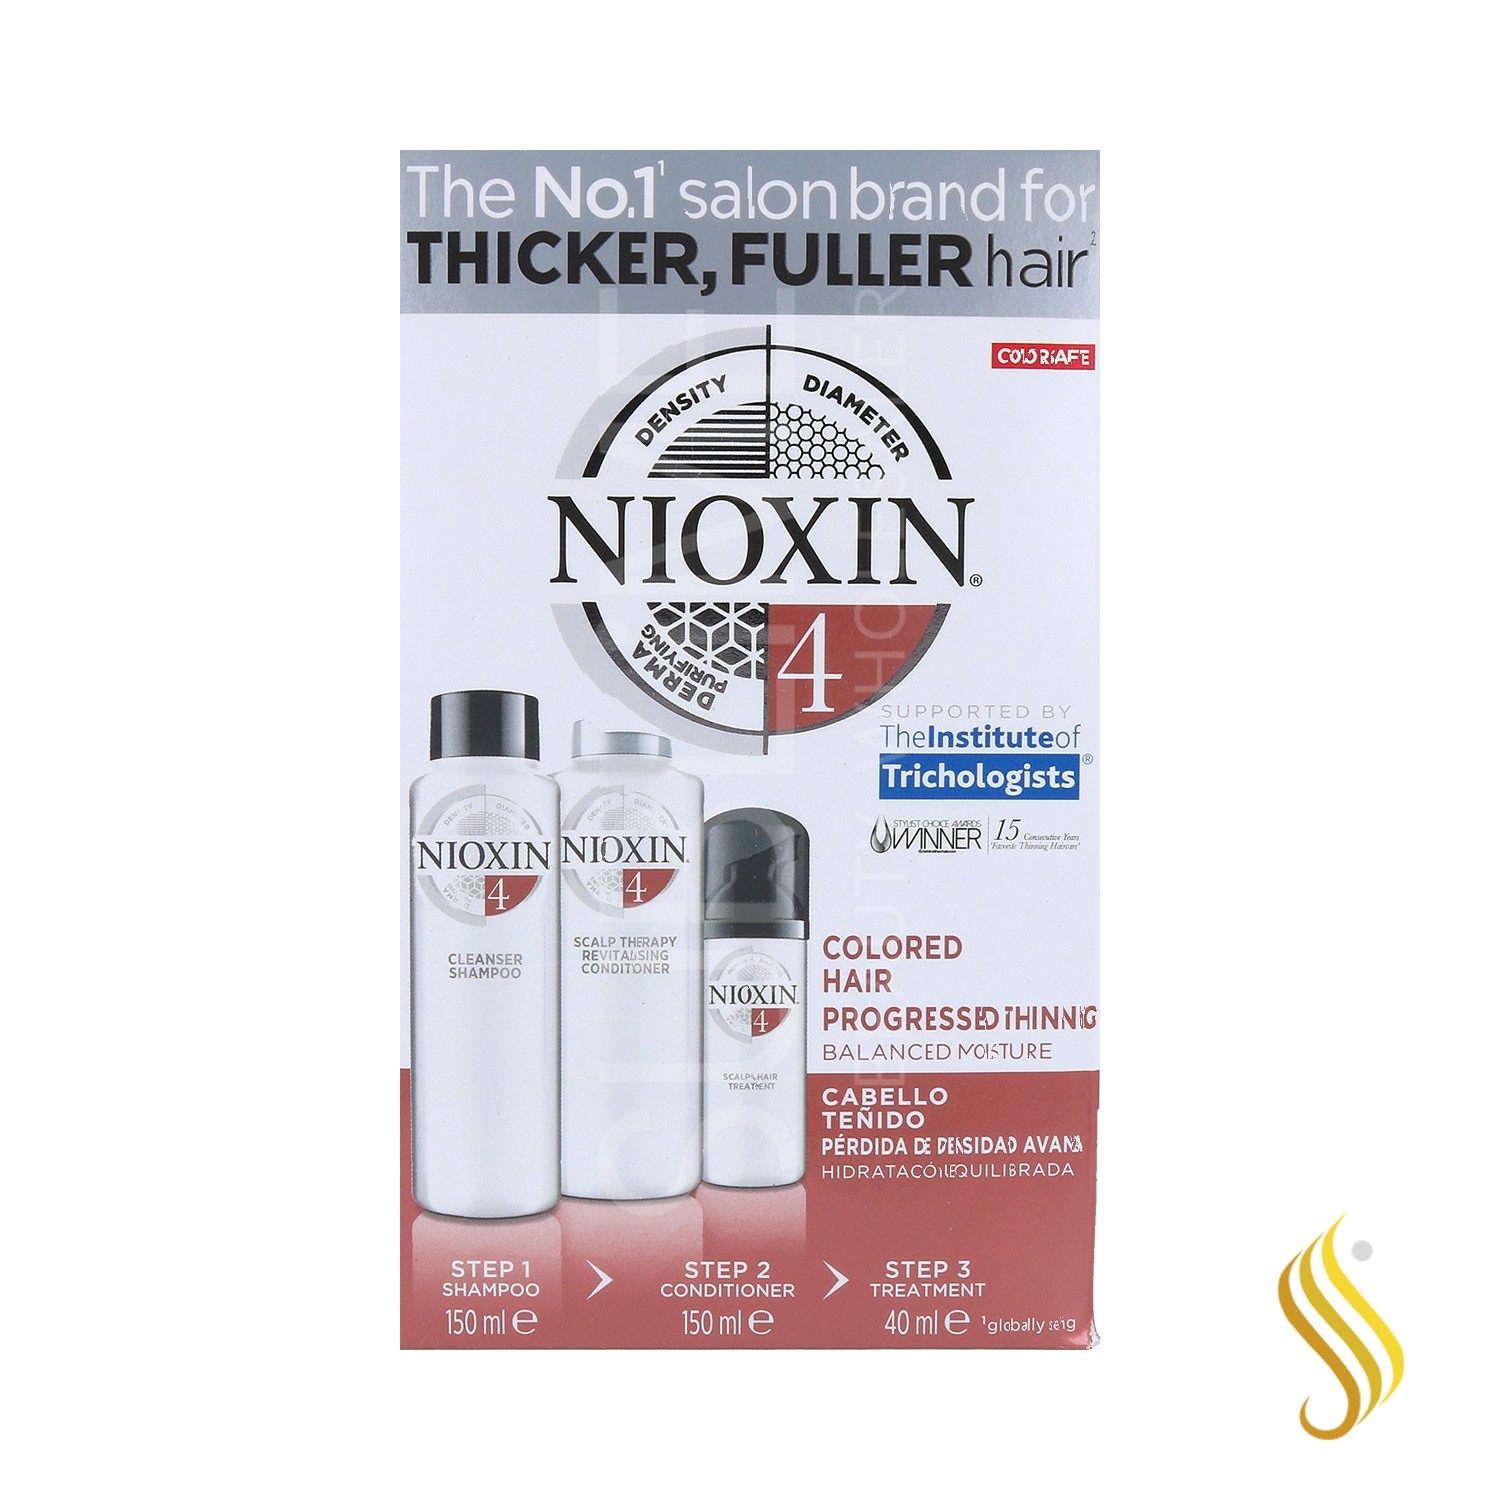 Nioxin Trial Kit Sistema 4 Cabello Teñido Avanzado